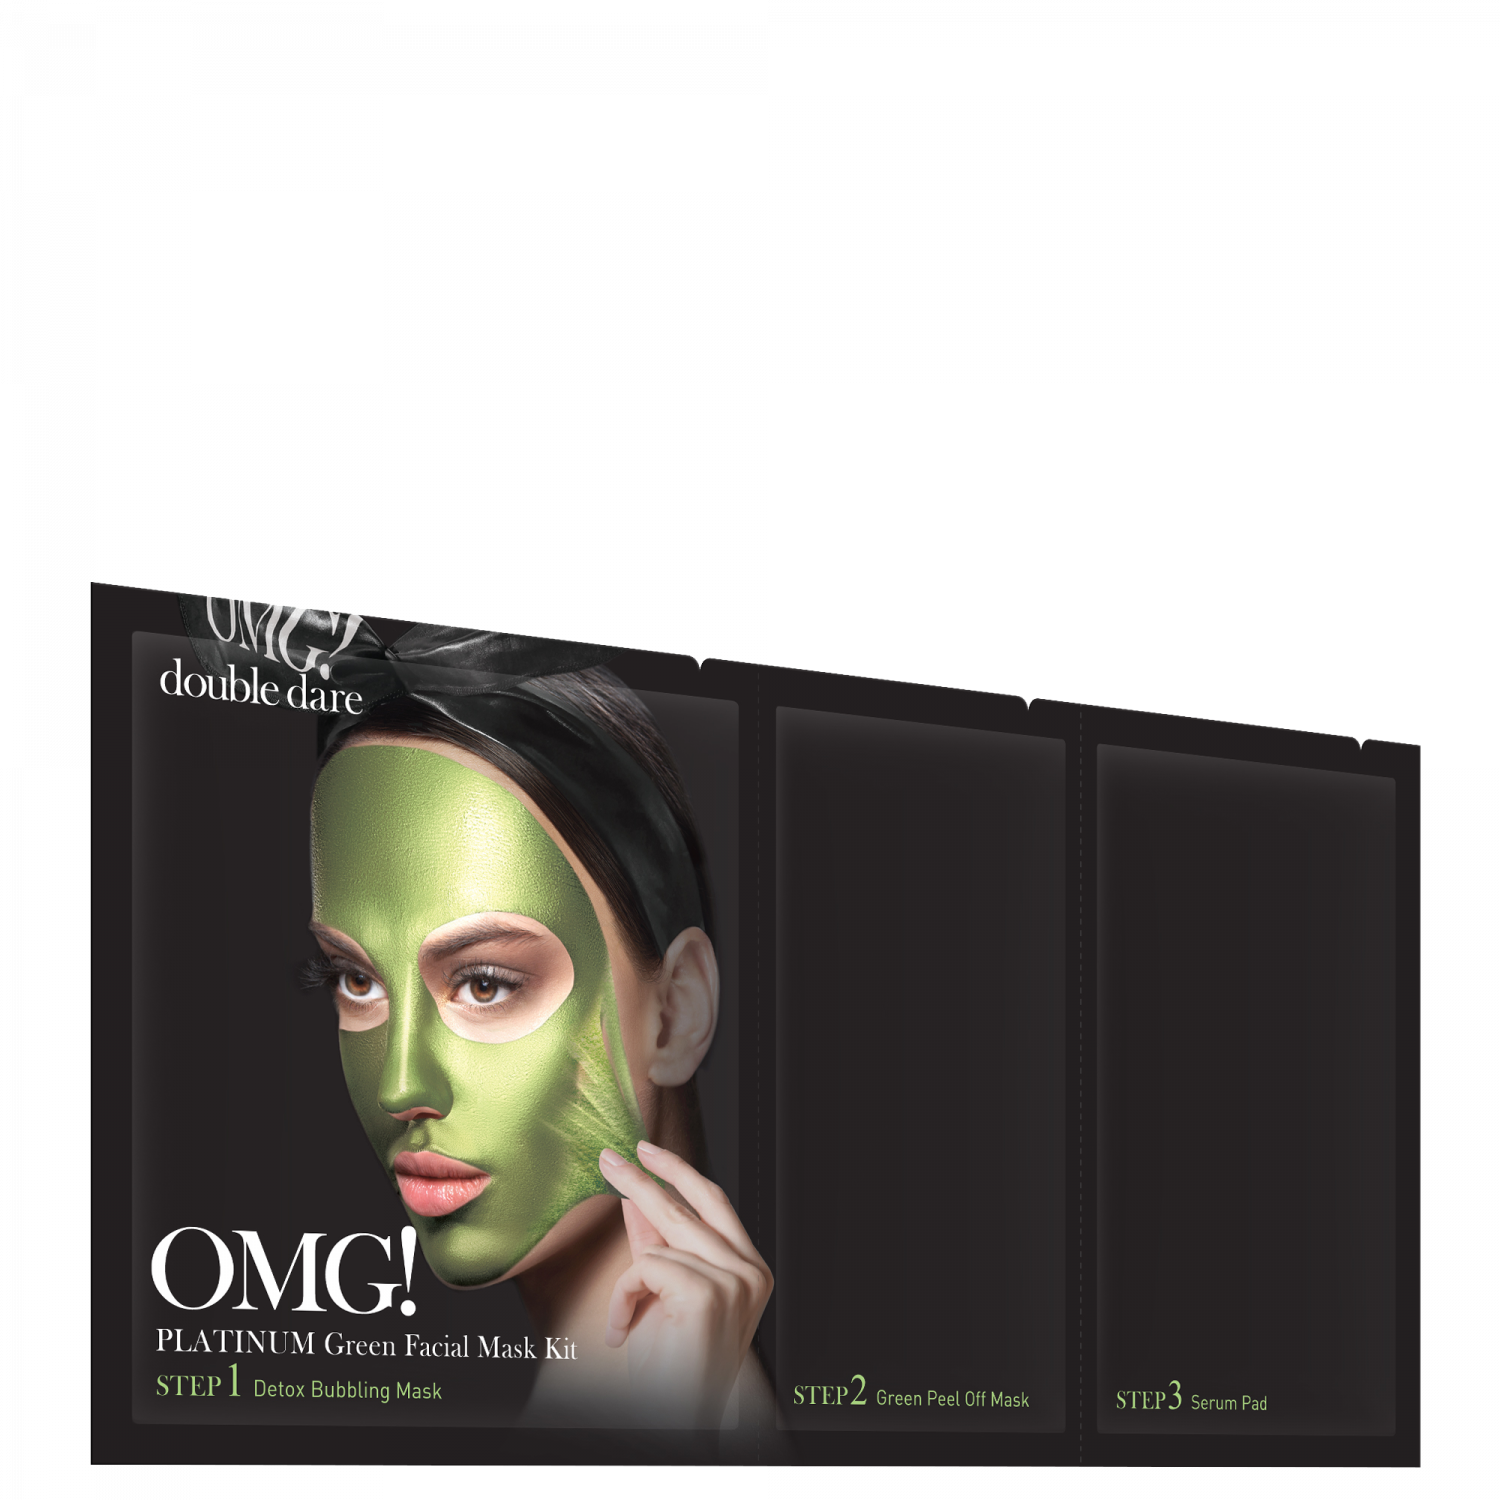 Double Dare OMG! Platinum GREEN Facial Mask Kit - интернет-магазин профессиональной косметики Spadream, изображение 40709